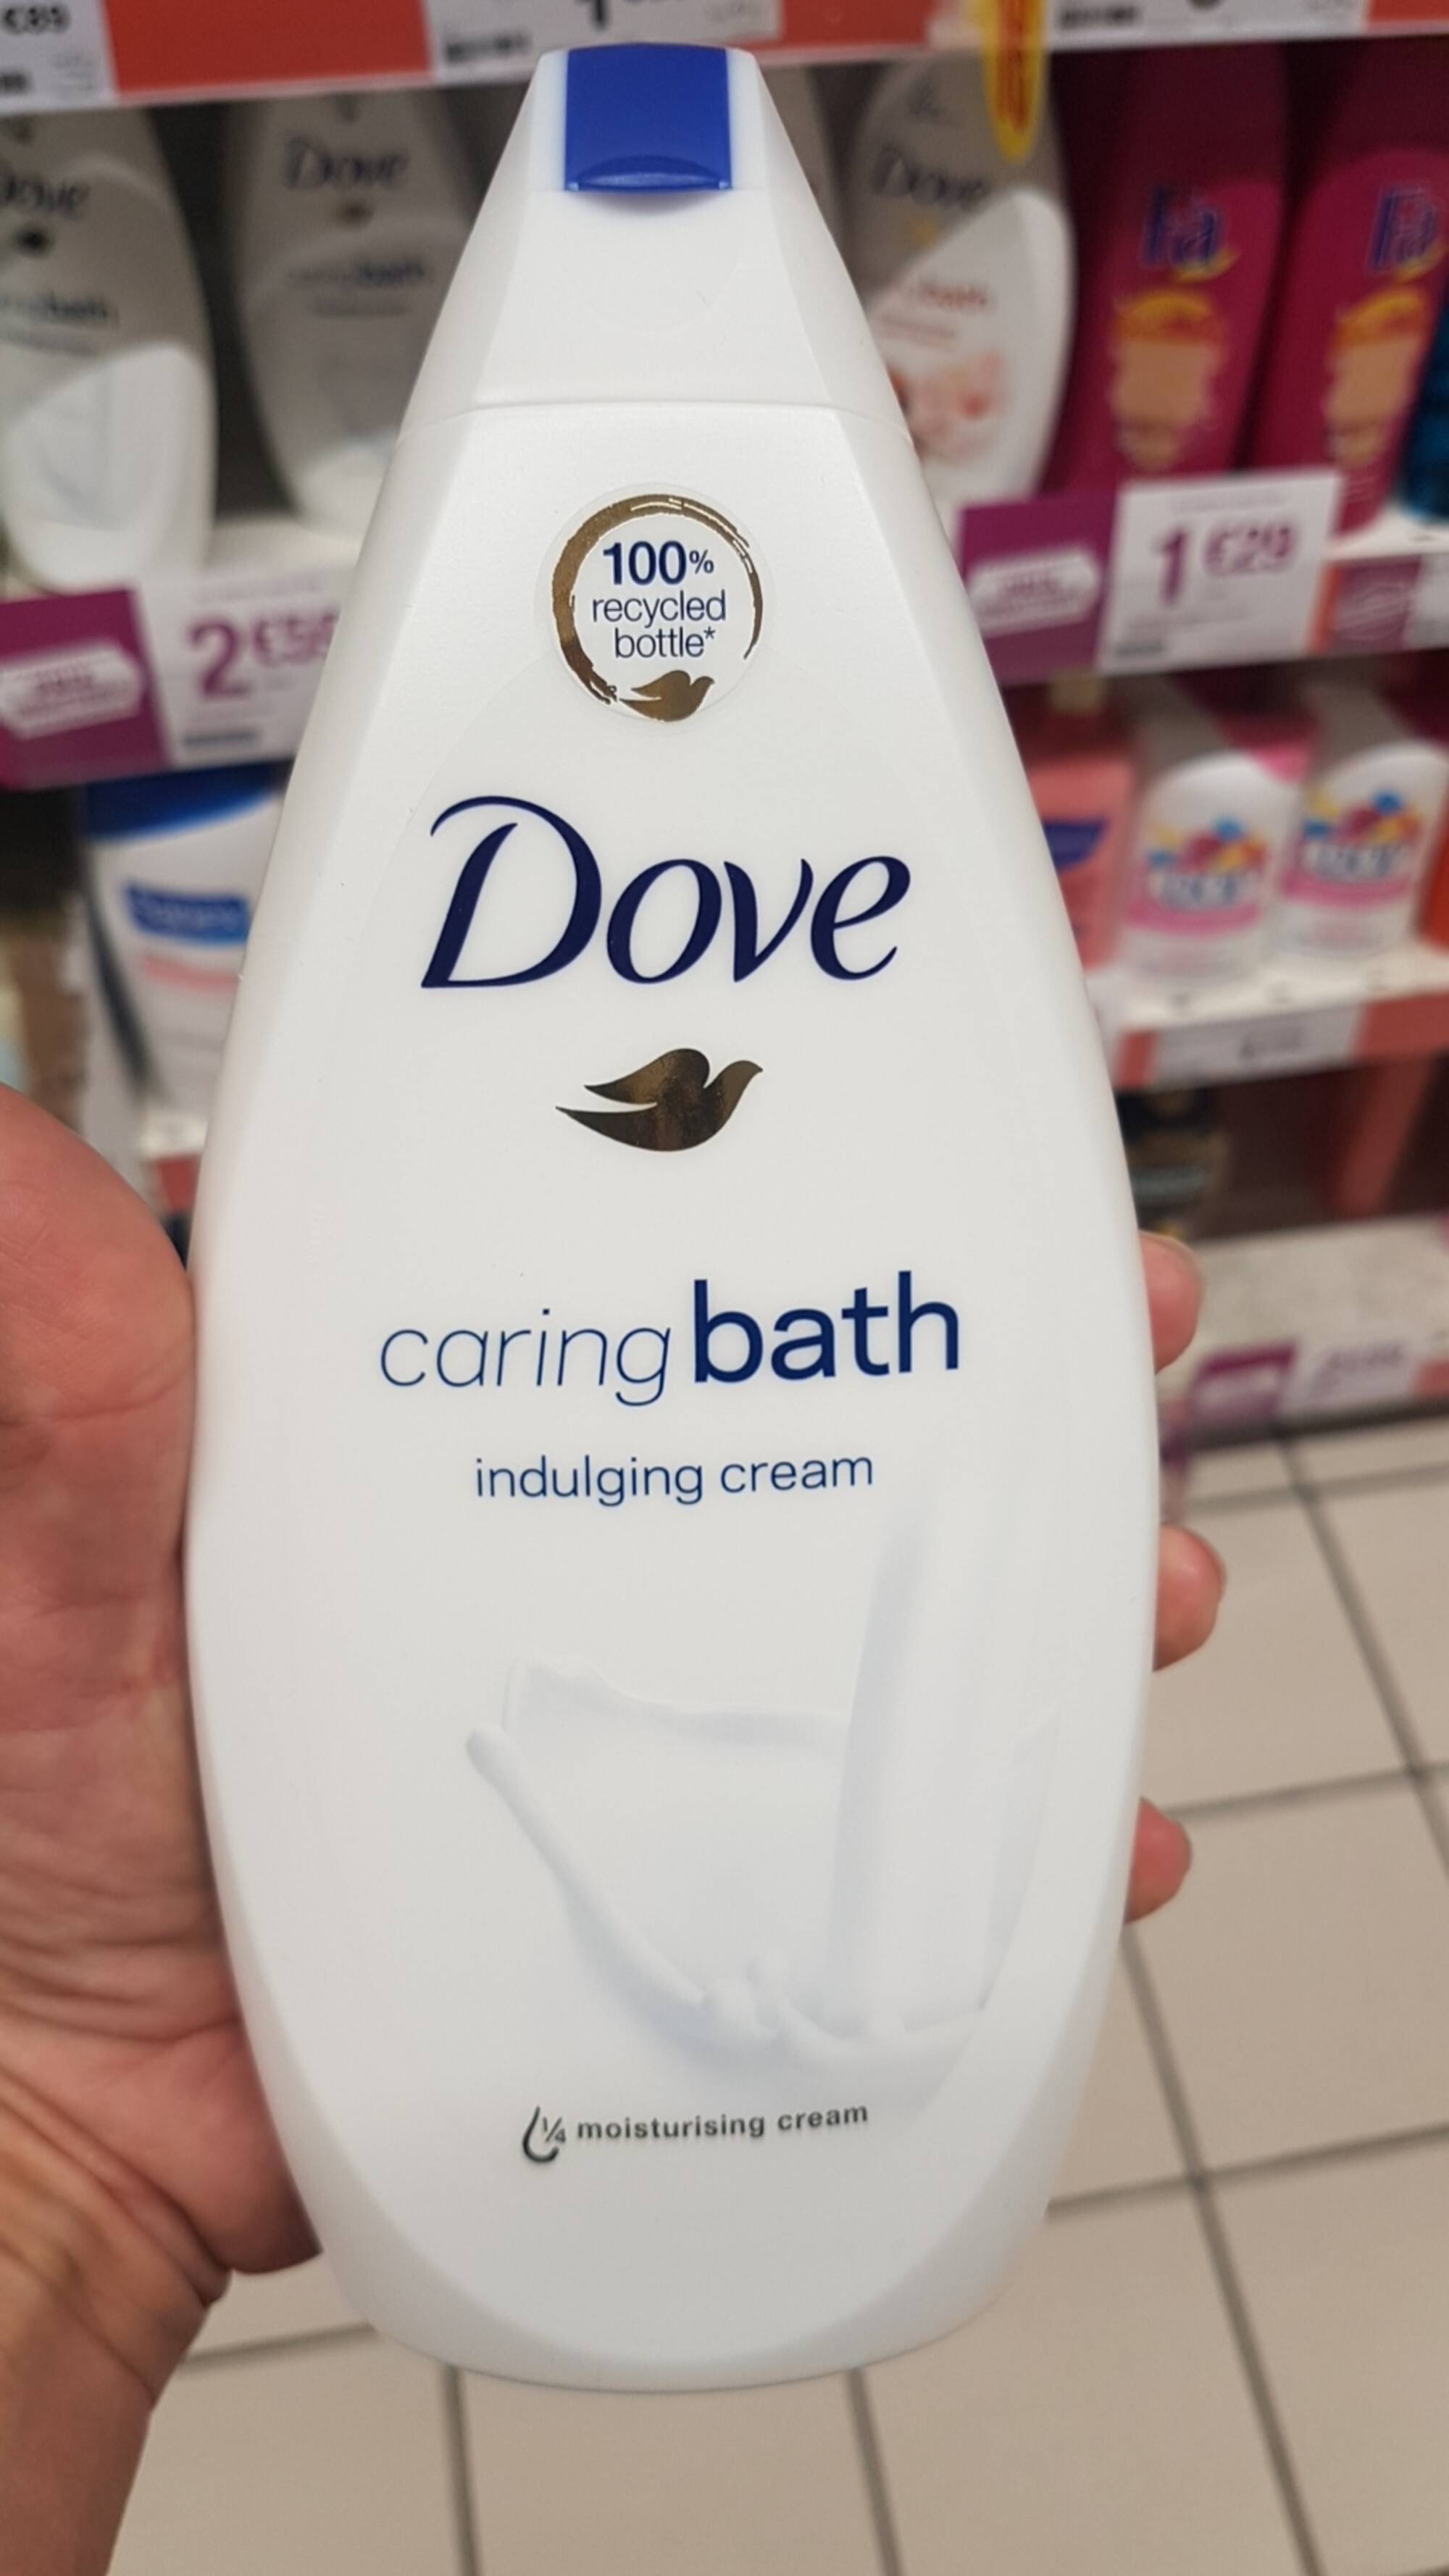 DOVE - Caring bath